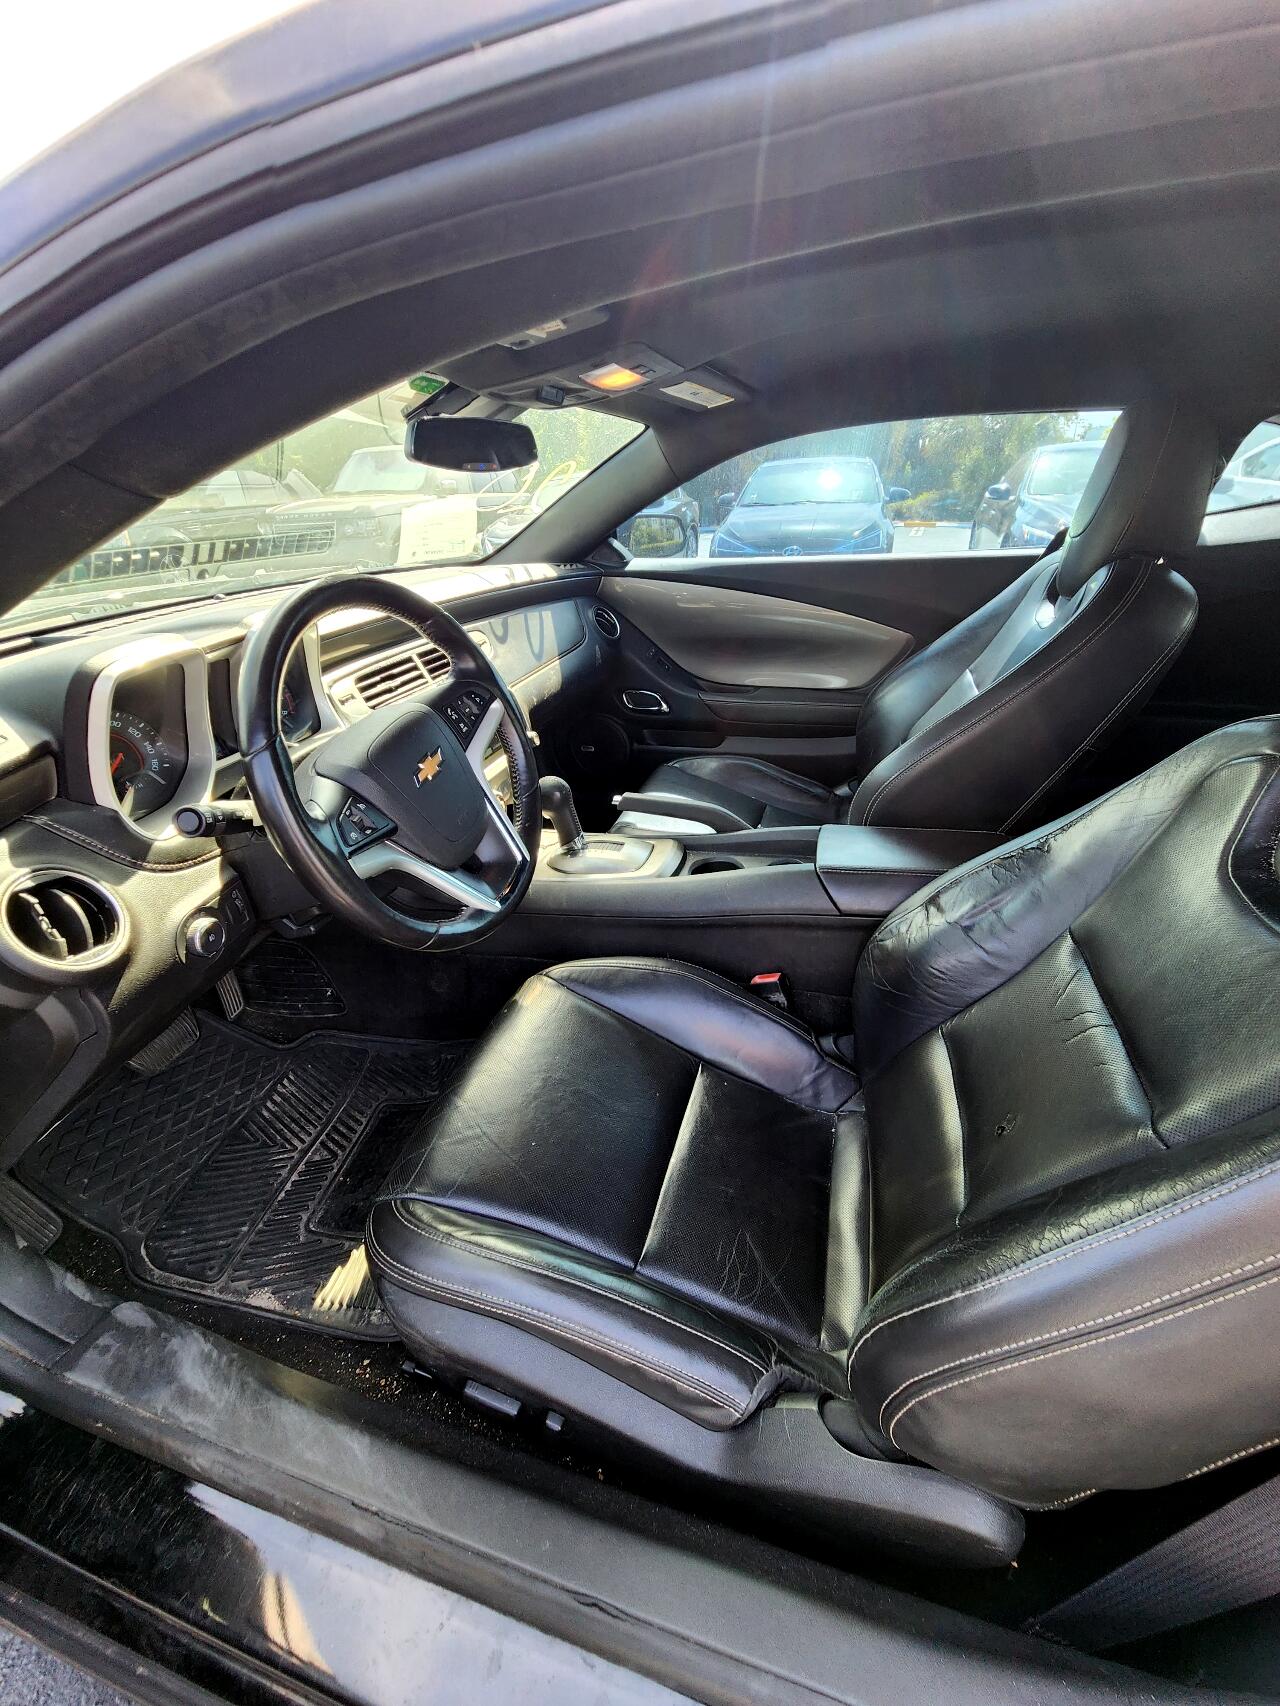 2015 CHEVROLET Camaro Coupe - $18,999